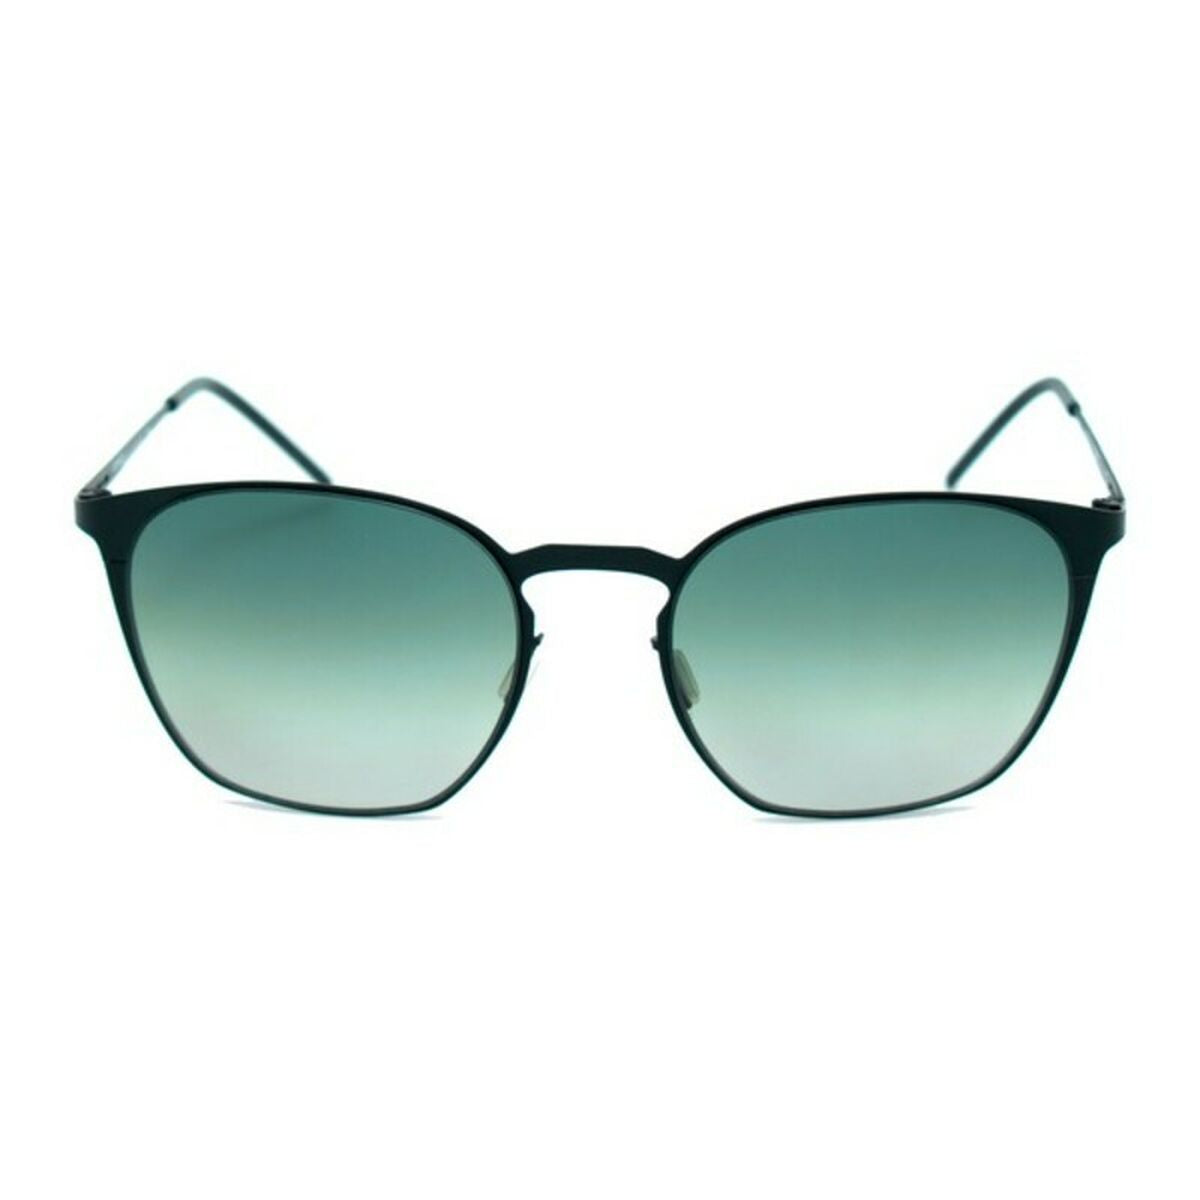 Unisex Sunglasses Italia Independent 0223-009-000